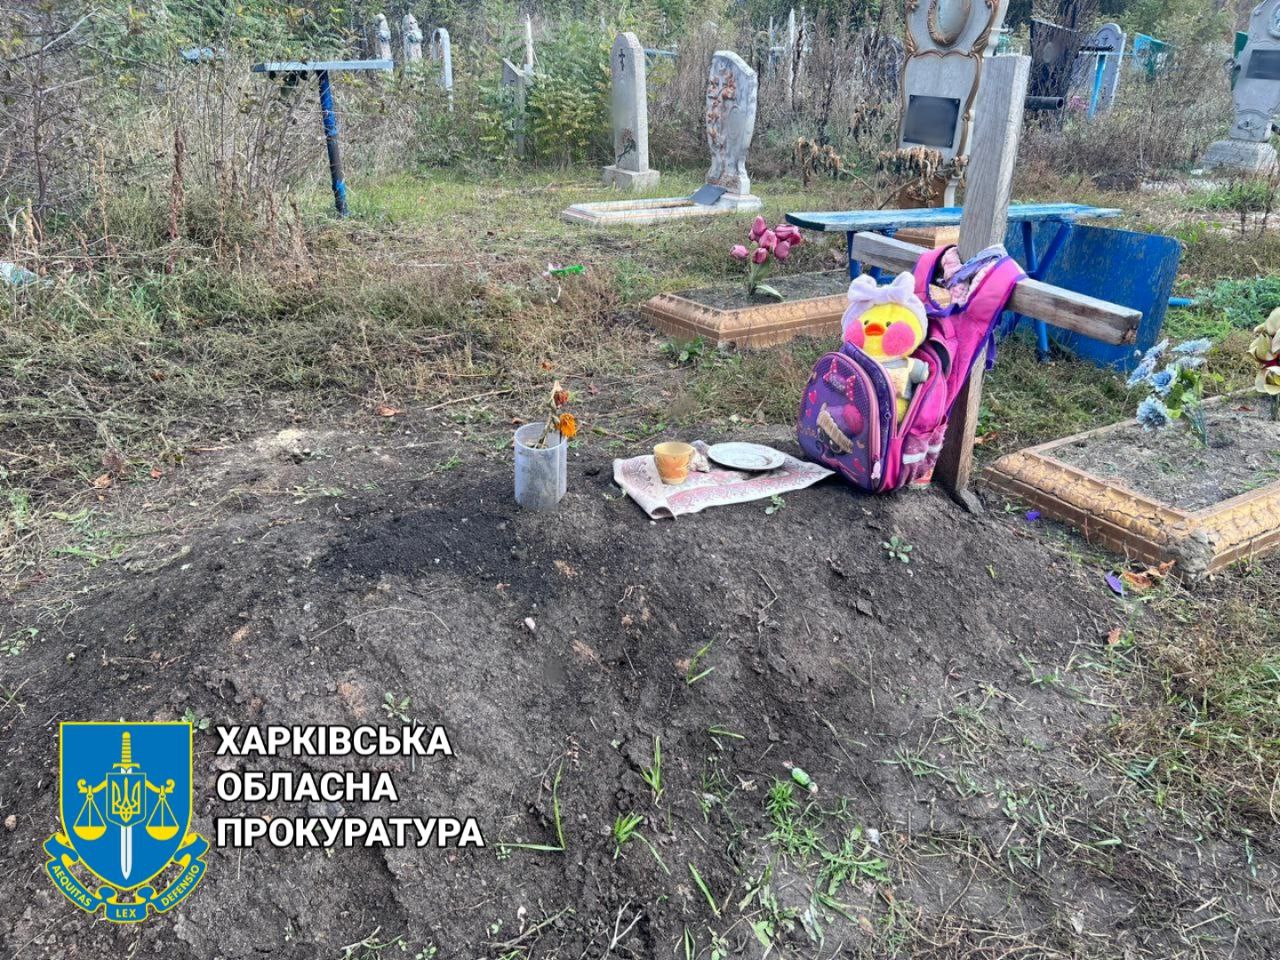 Дважды попала под обстрел: тело 10-летней девочки эксгумировали на Харьковщине